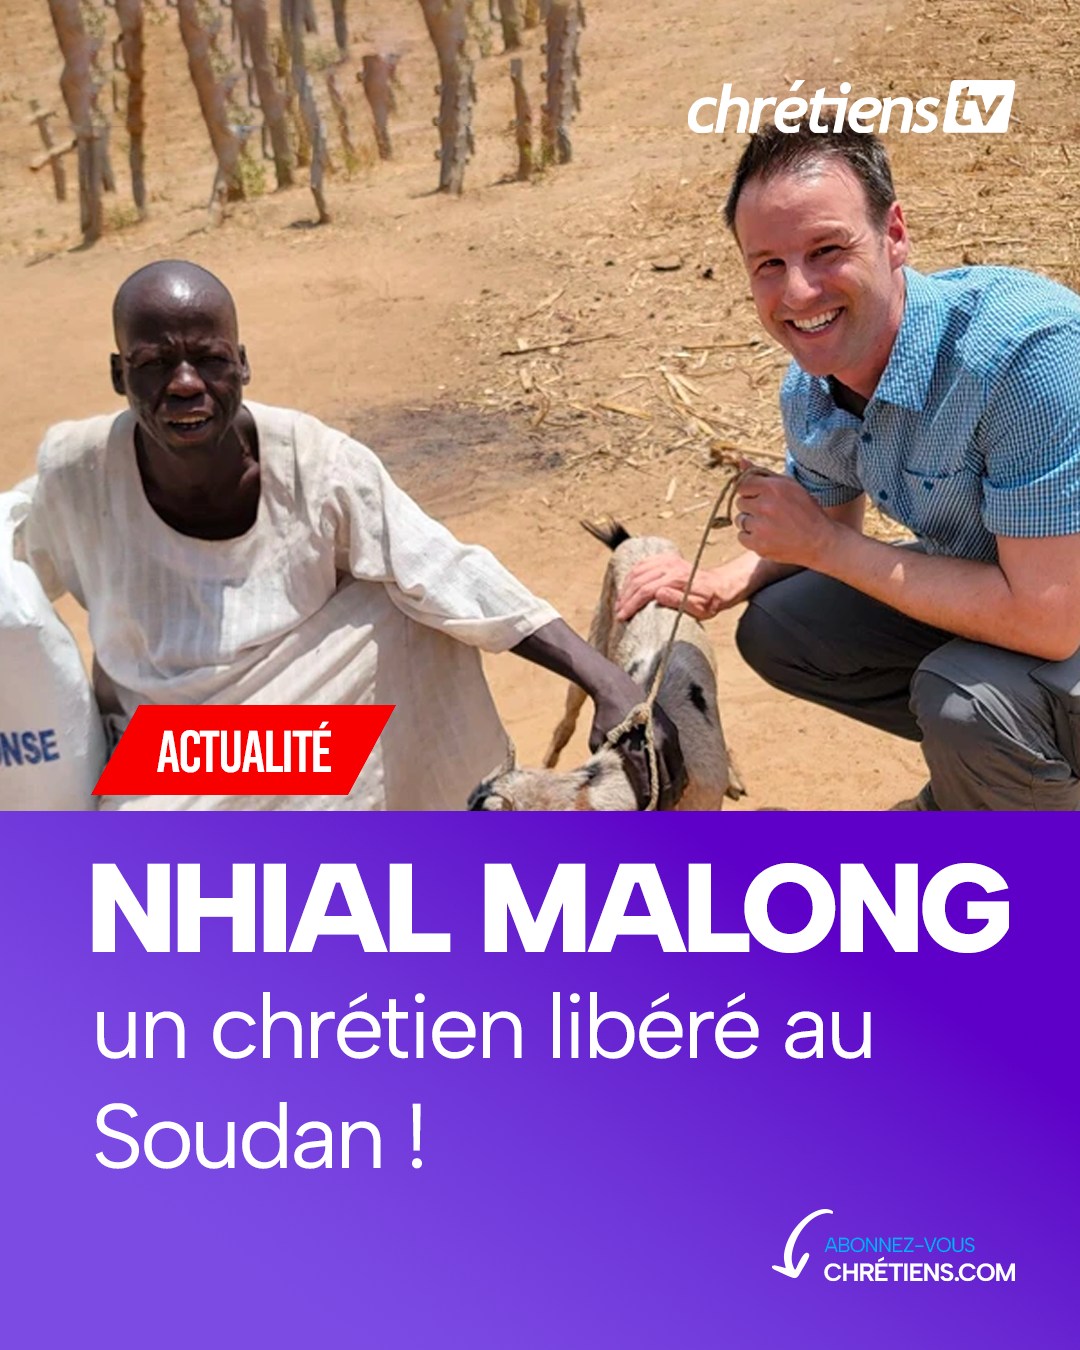 Quand il était enfant, Nhial Malong vivait heureux avec sa famille dans le village sud-soudanais de Marialbai, menant paître leur petit troupeau de vaches et de chèvres.